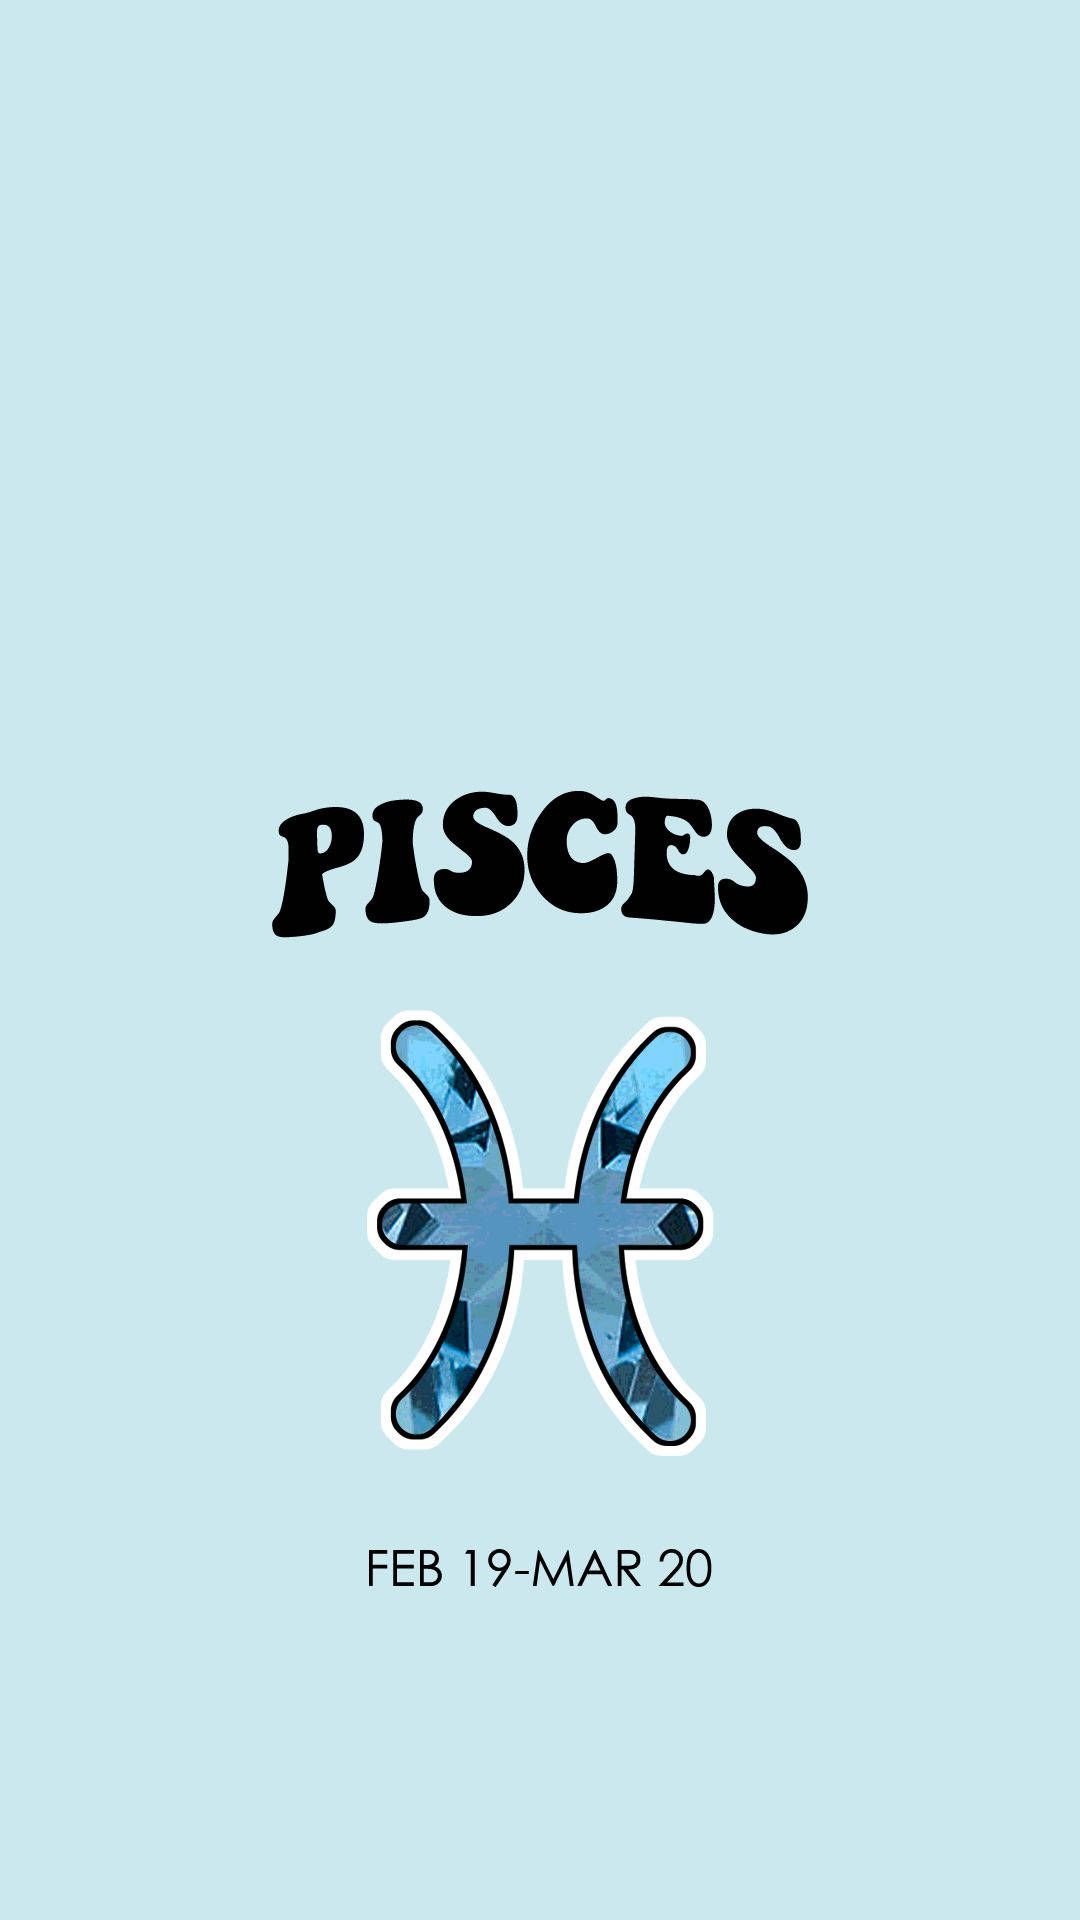 Pisces zodiac sign wallpaper - Pisces